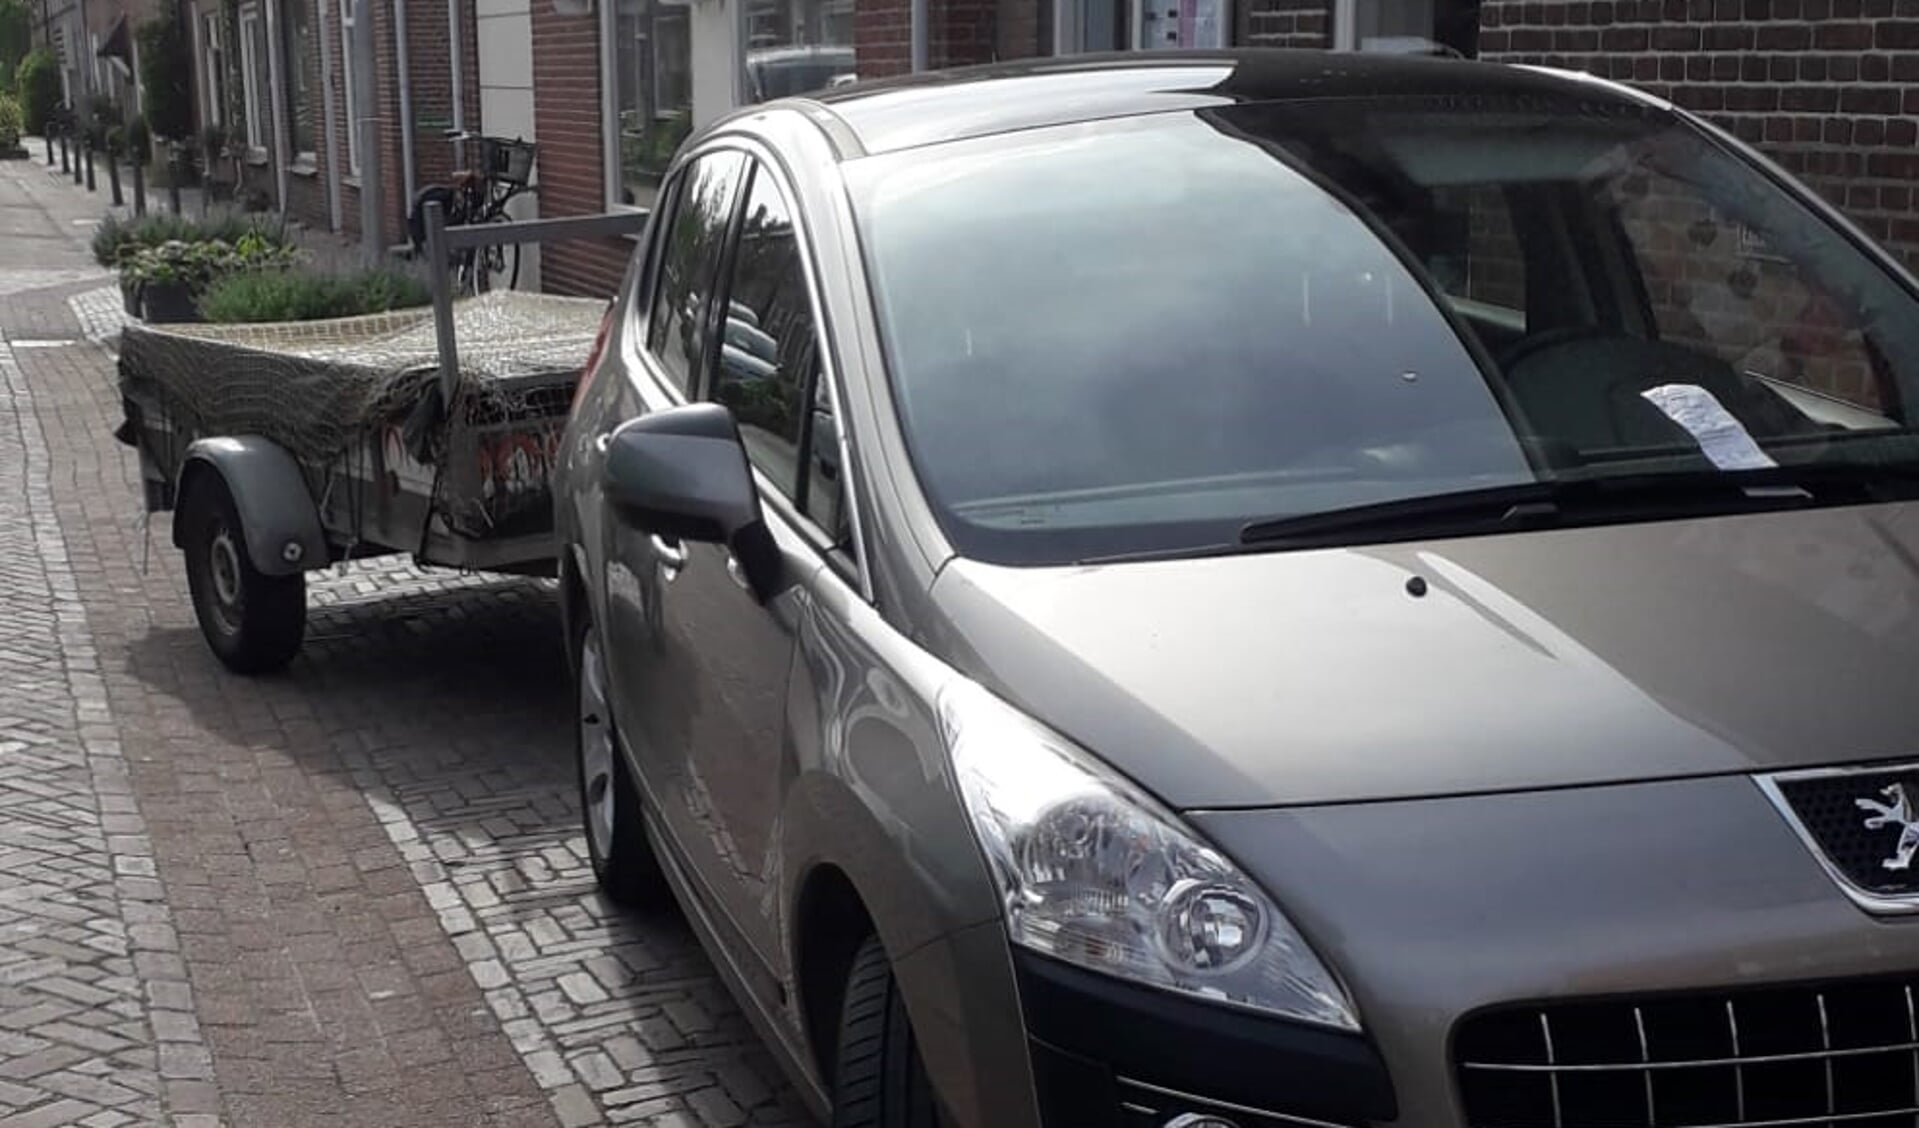 De auto met aanhanger van de winkel Terre des Hommes waarmee iedere maandag niet meer verkoopbare spullen naar Avalex worden gebracht. Op 2 mei zat er ineens een bon van 100 euro onder de ruitenwissers.